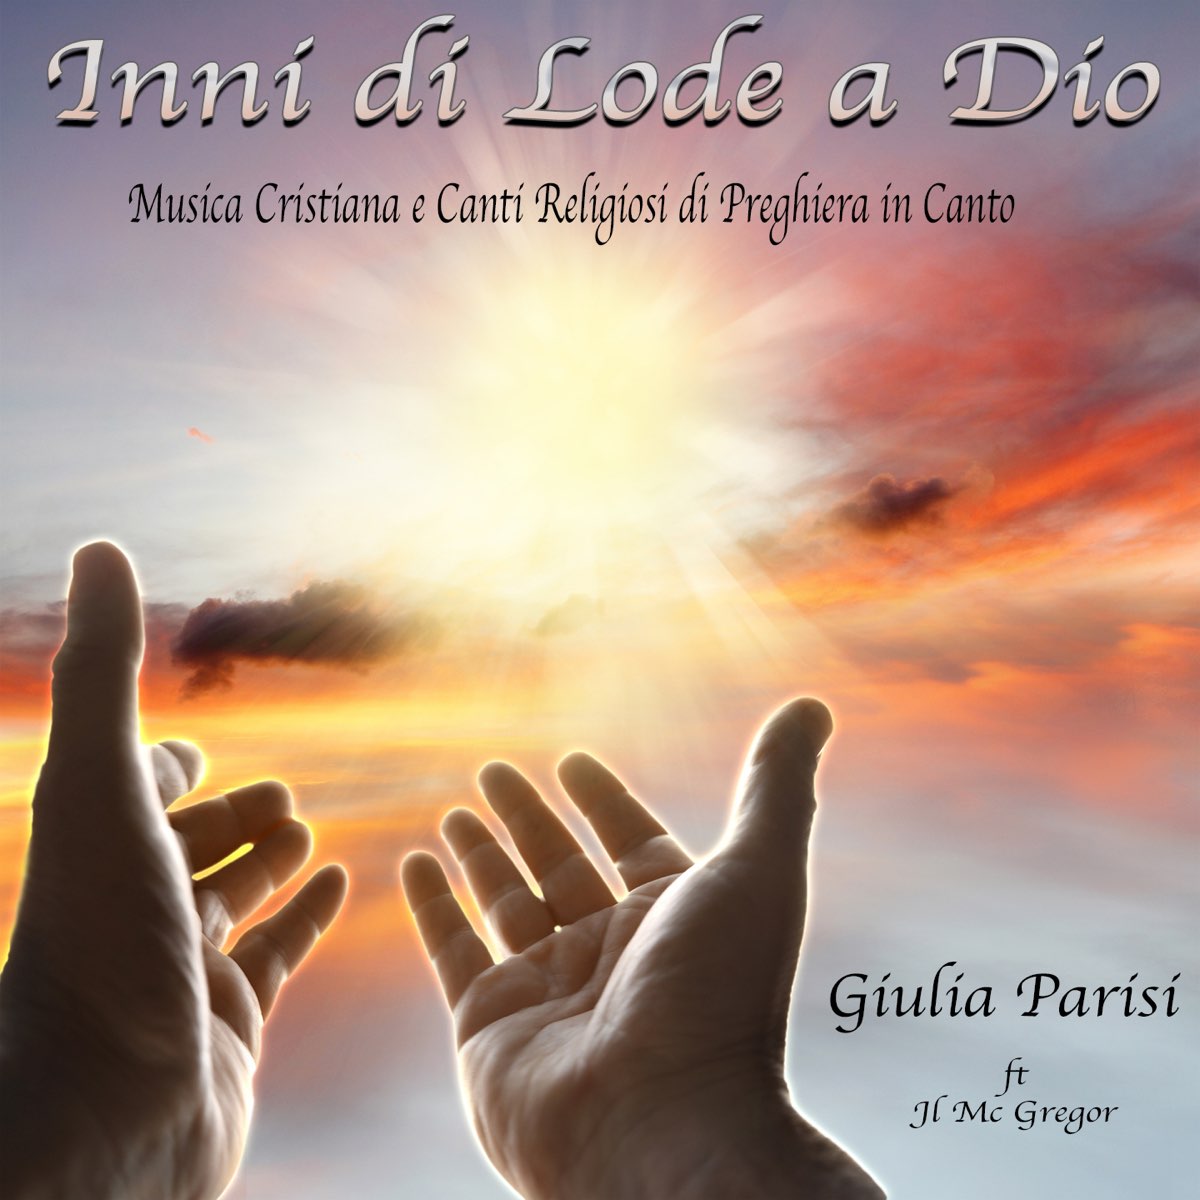 Inni di lode a Dio (Musica cristiana e canti religiosi di preghiera in  canto) by Giulia Parisi on Apple Music